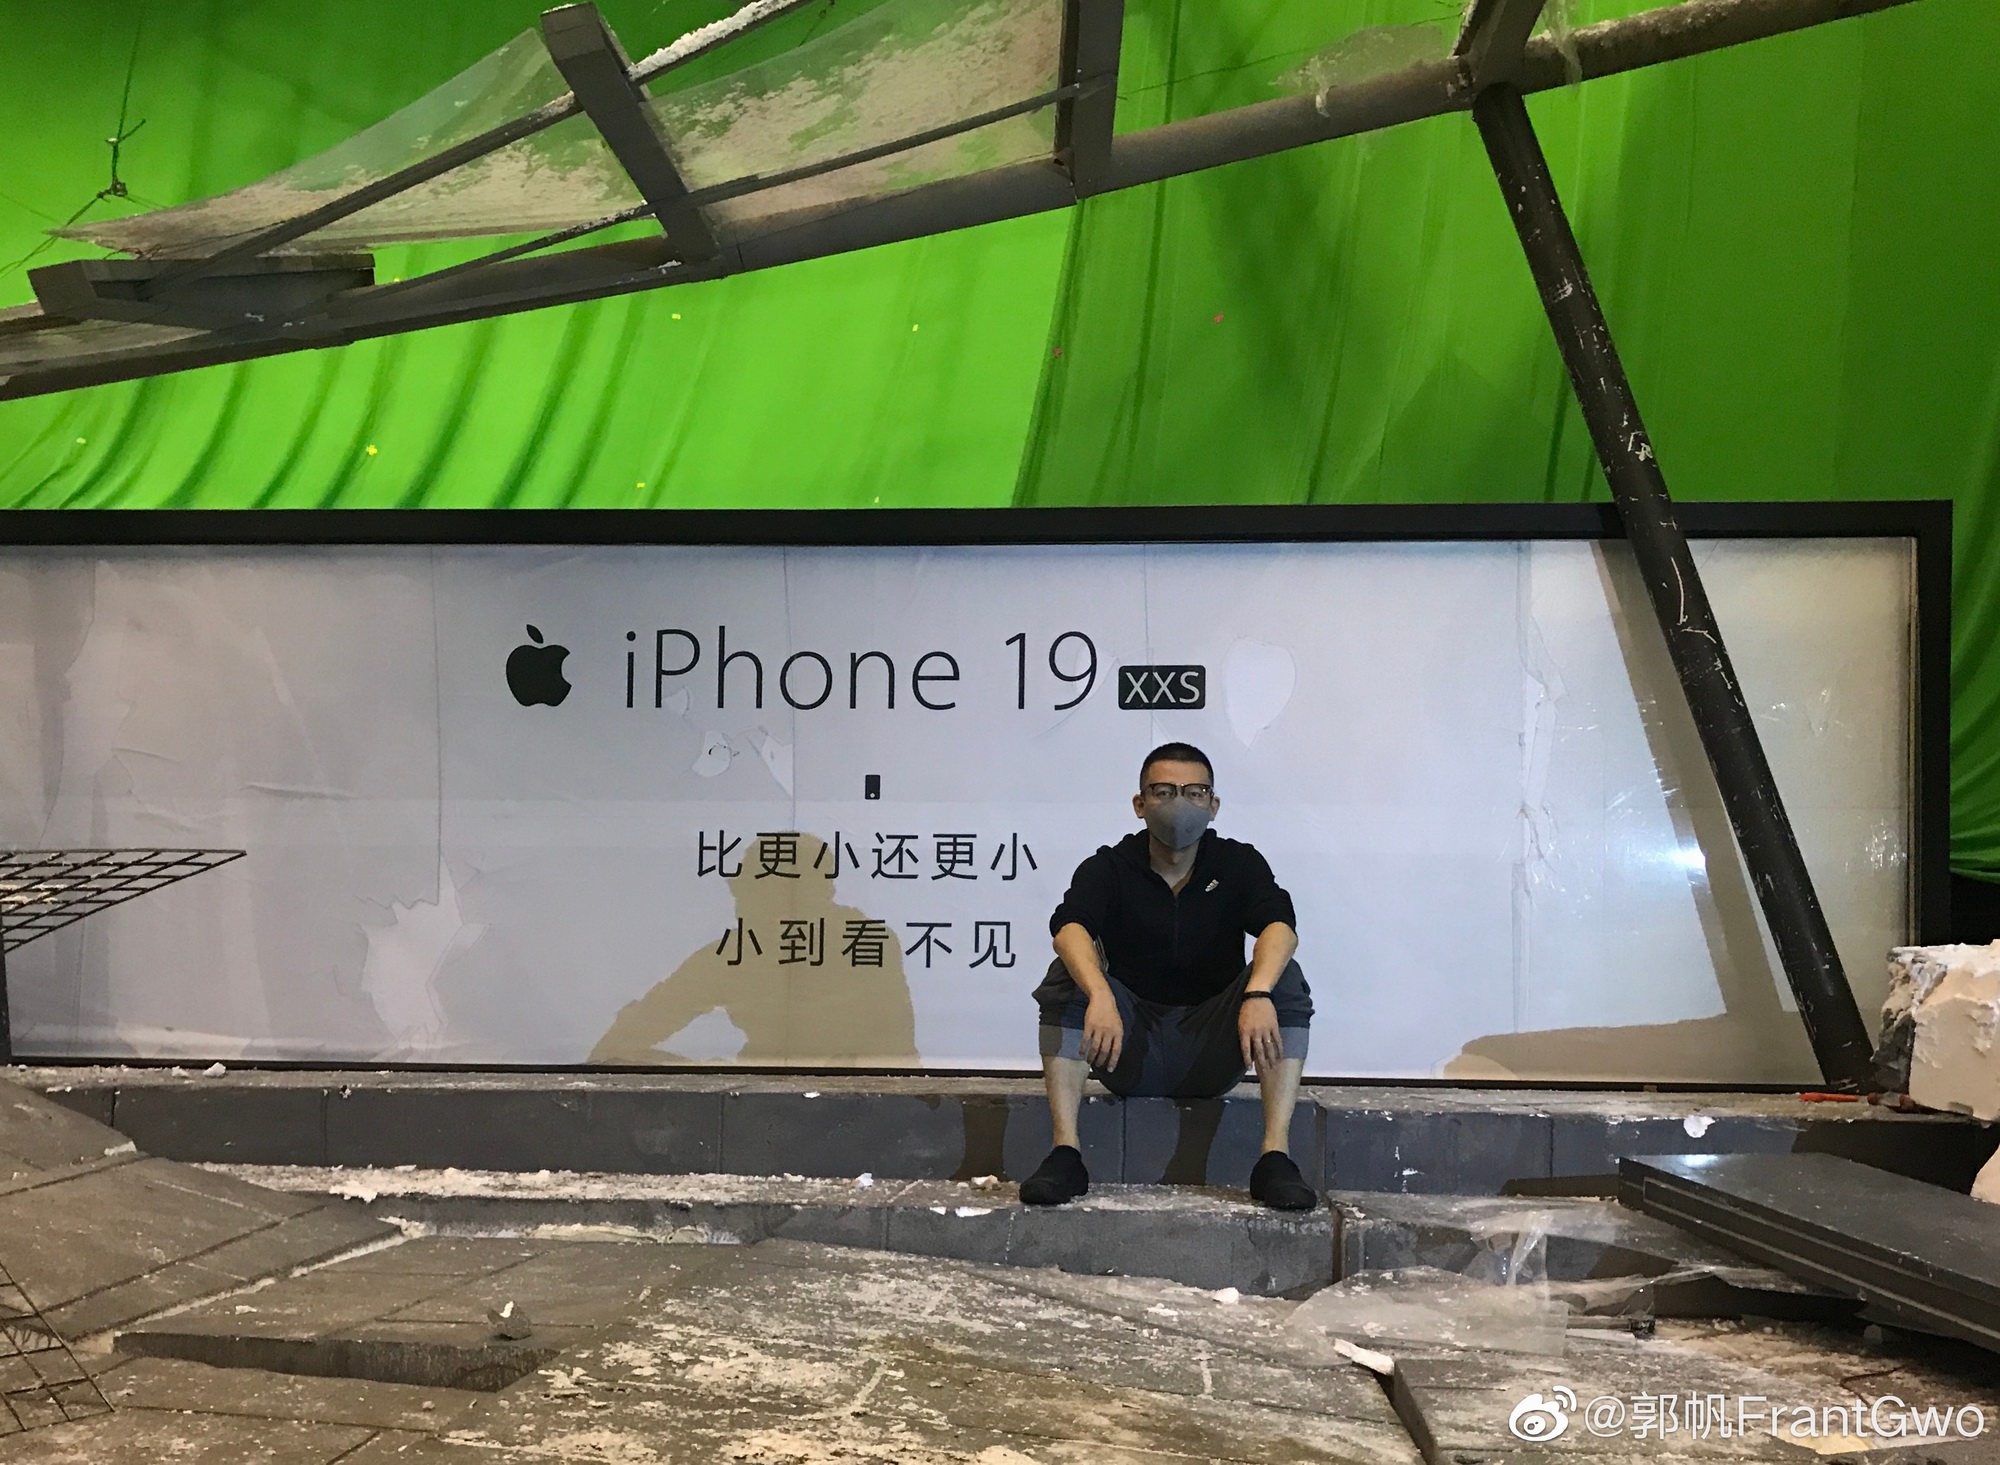 《流浪地球》导演郭帆晒“iPhone 19广告” 画面亮了